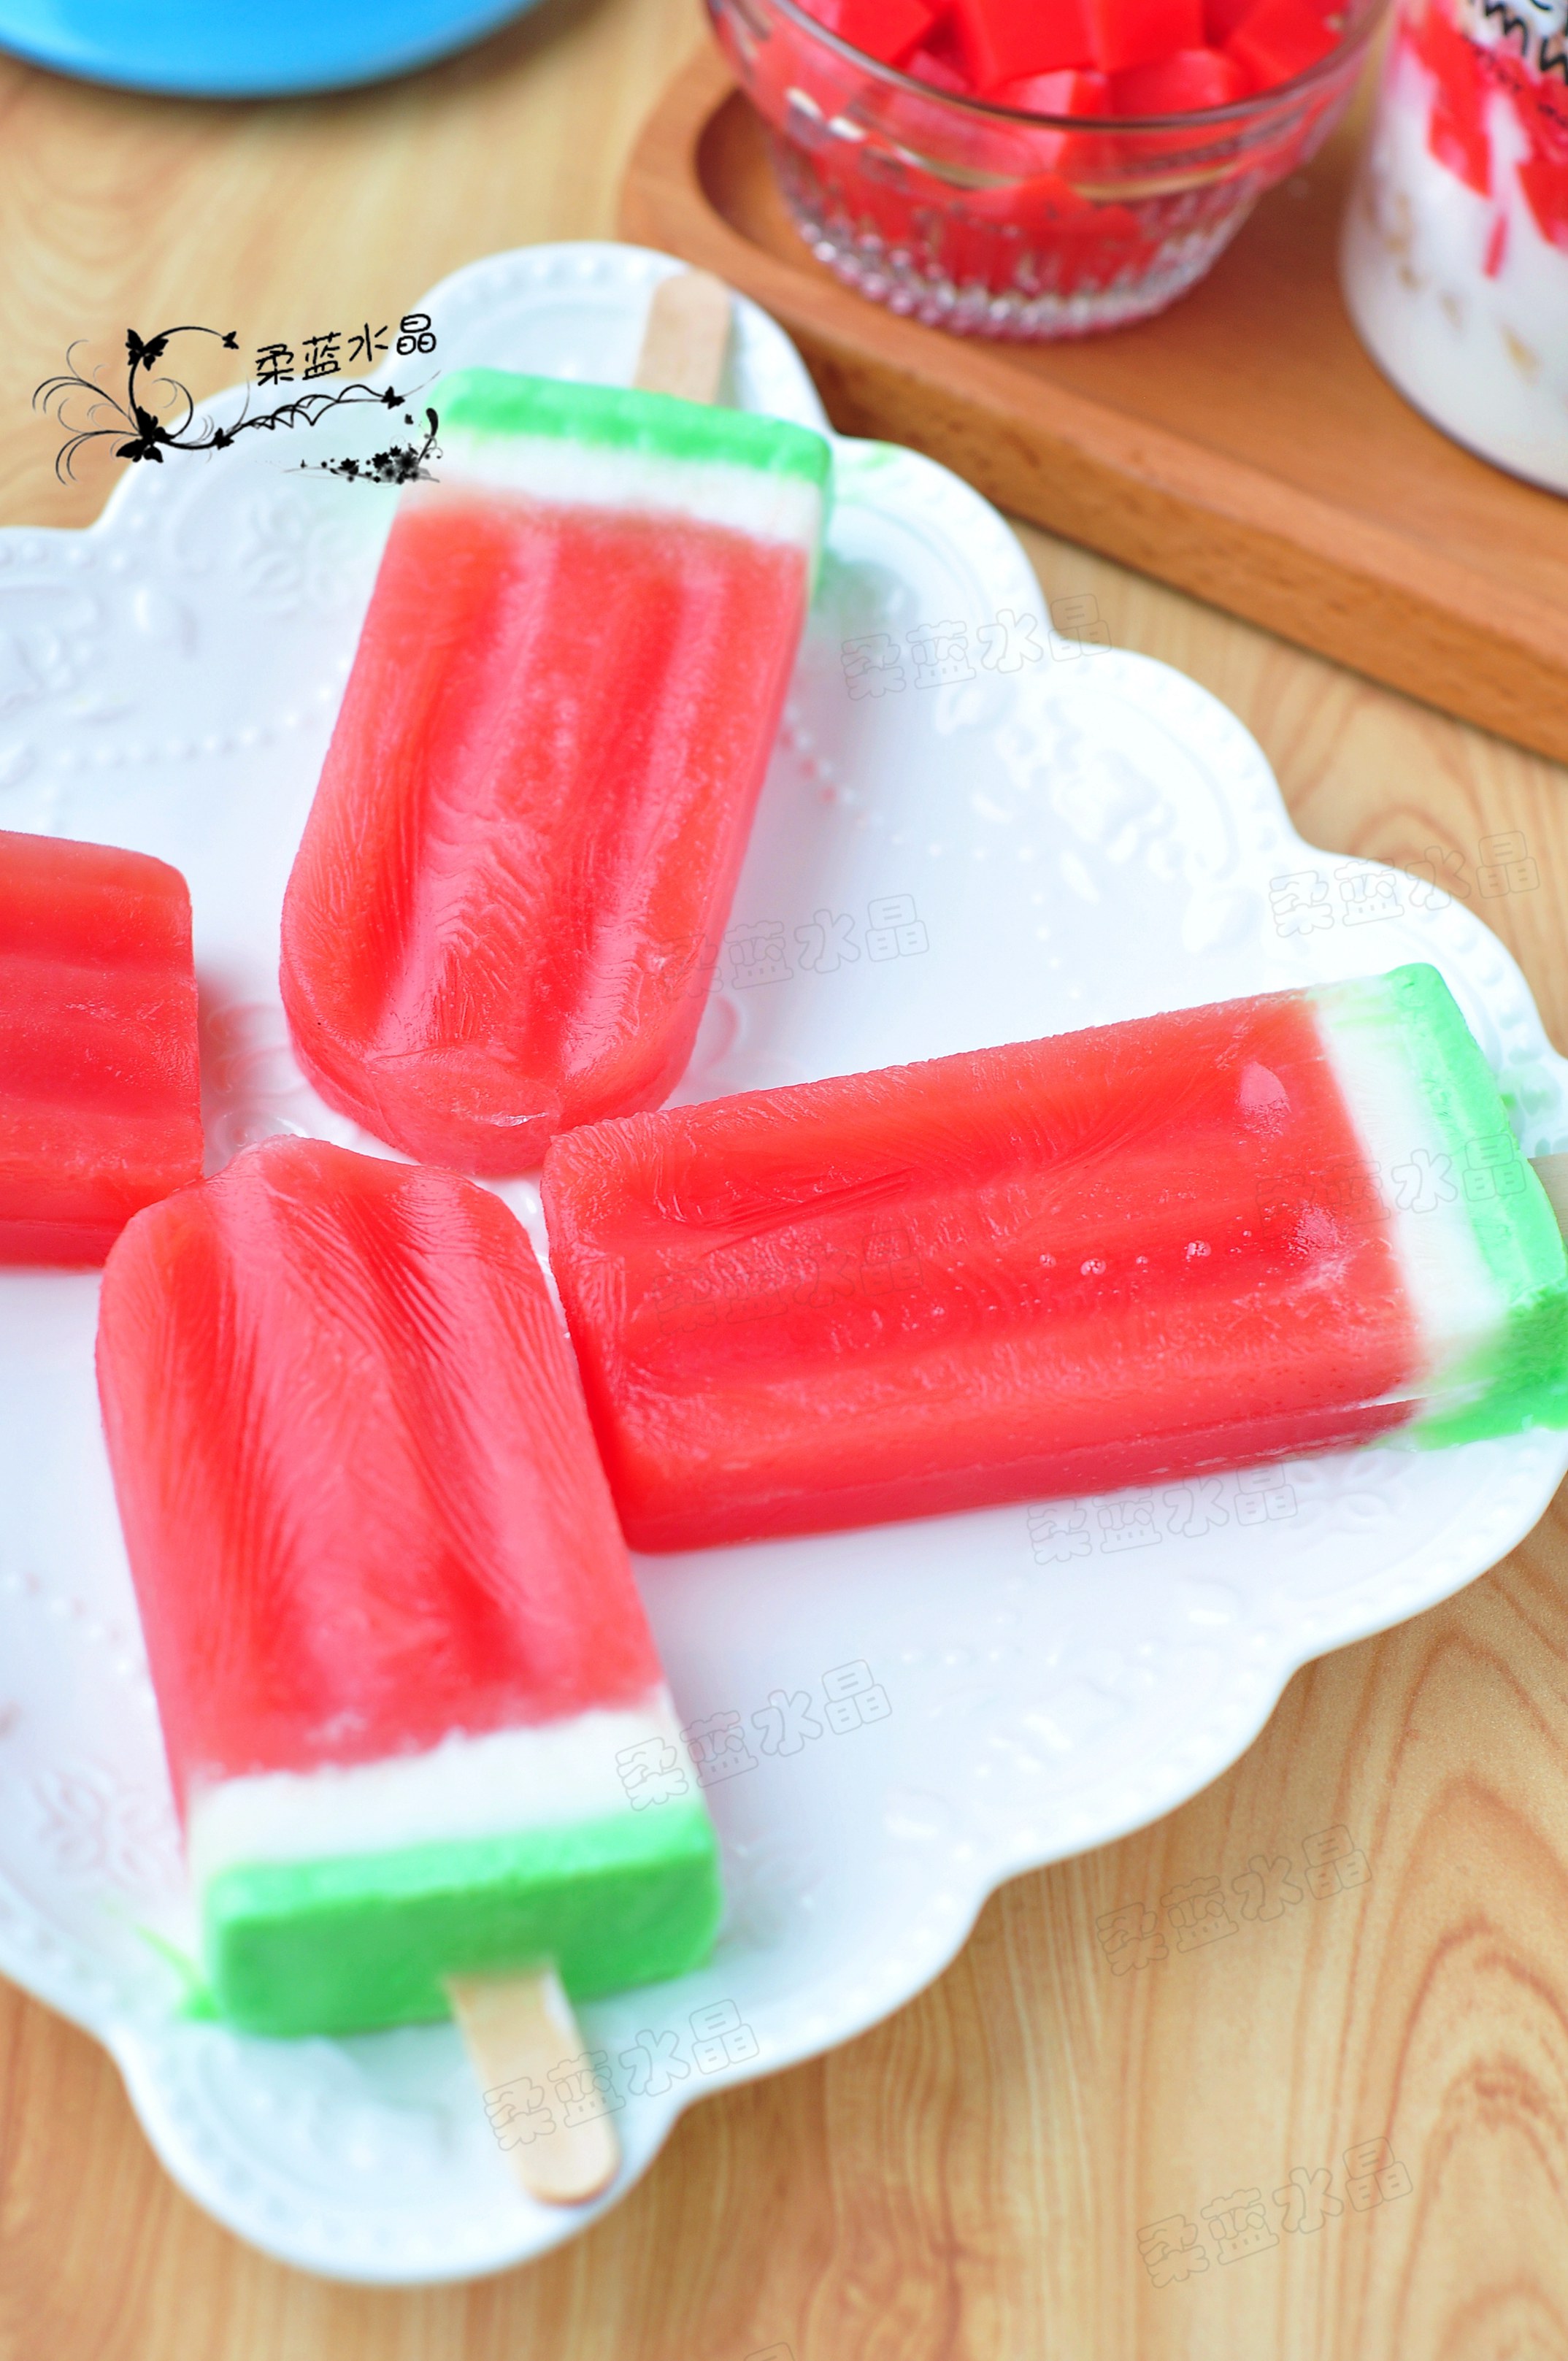 西瓜冰棒 🍉 🍉 🍉 水果冰棒 by 小紅莓 - 愛料理